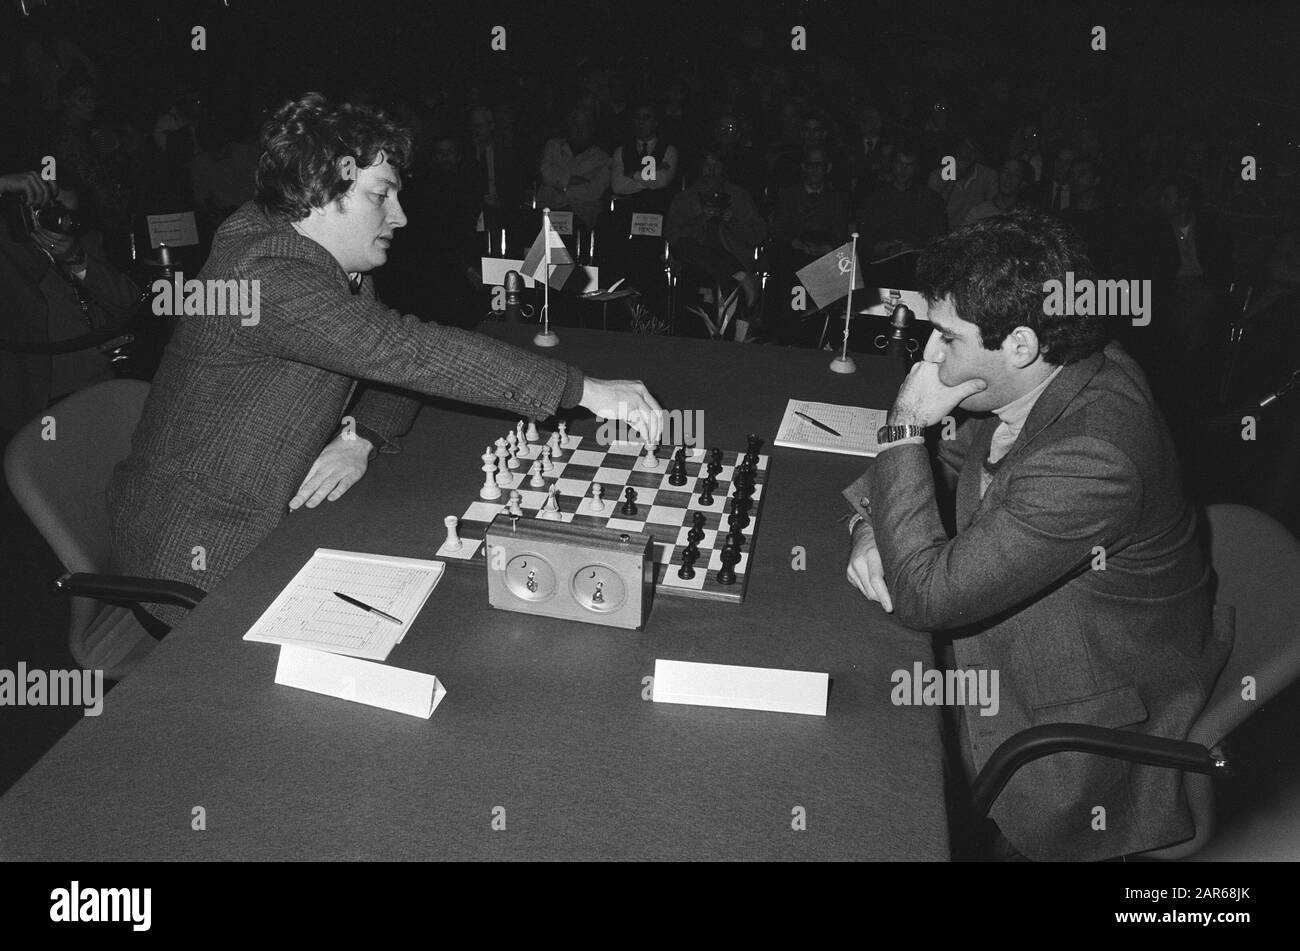 Karpov-Kasparov, KK2 16th match game, 1985, Chess